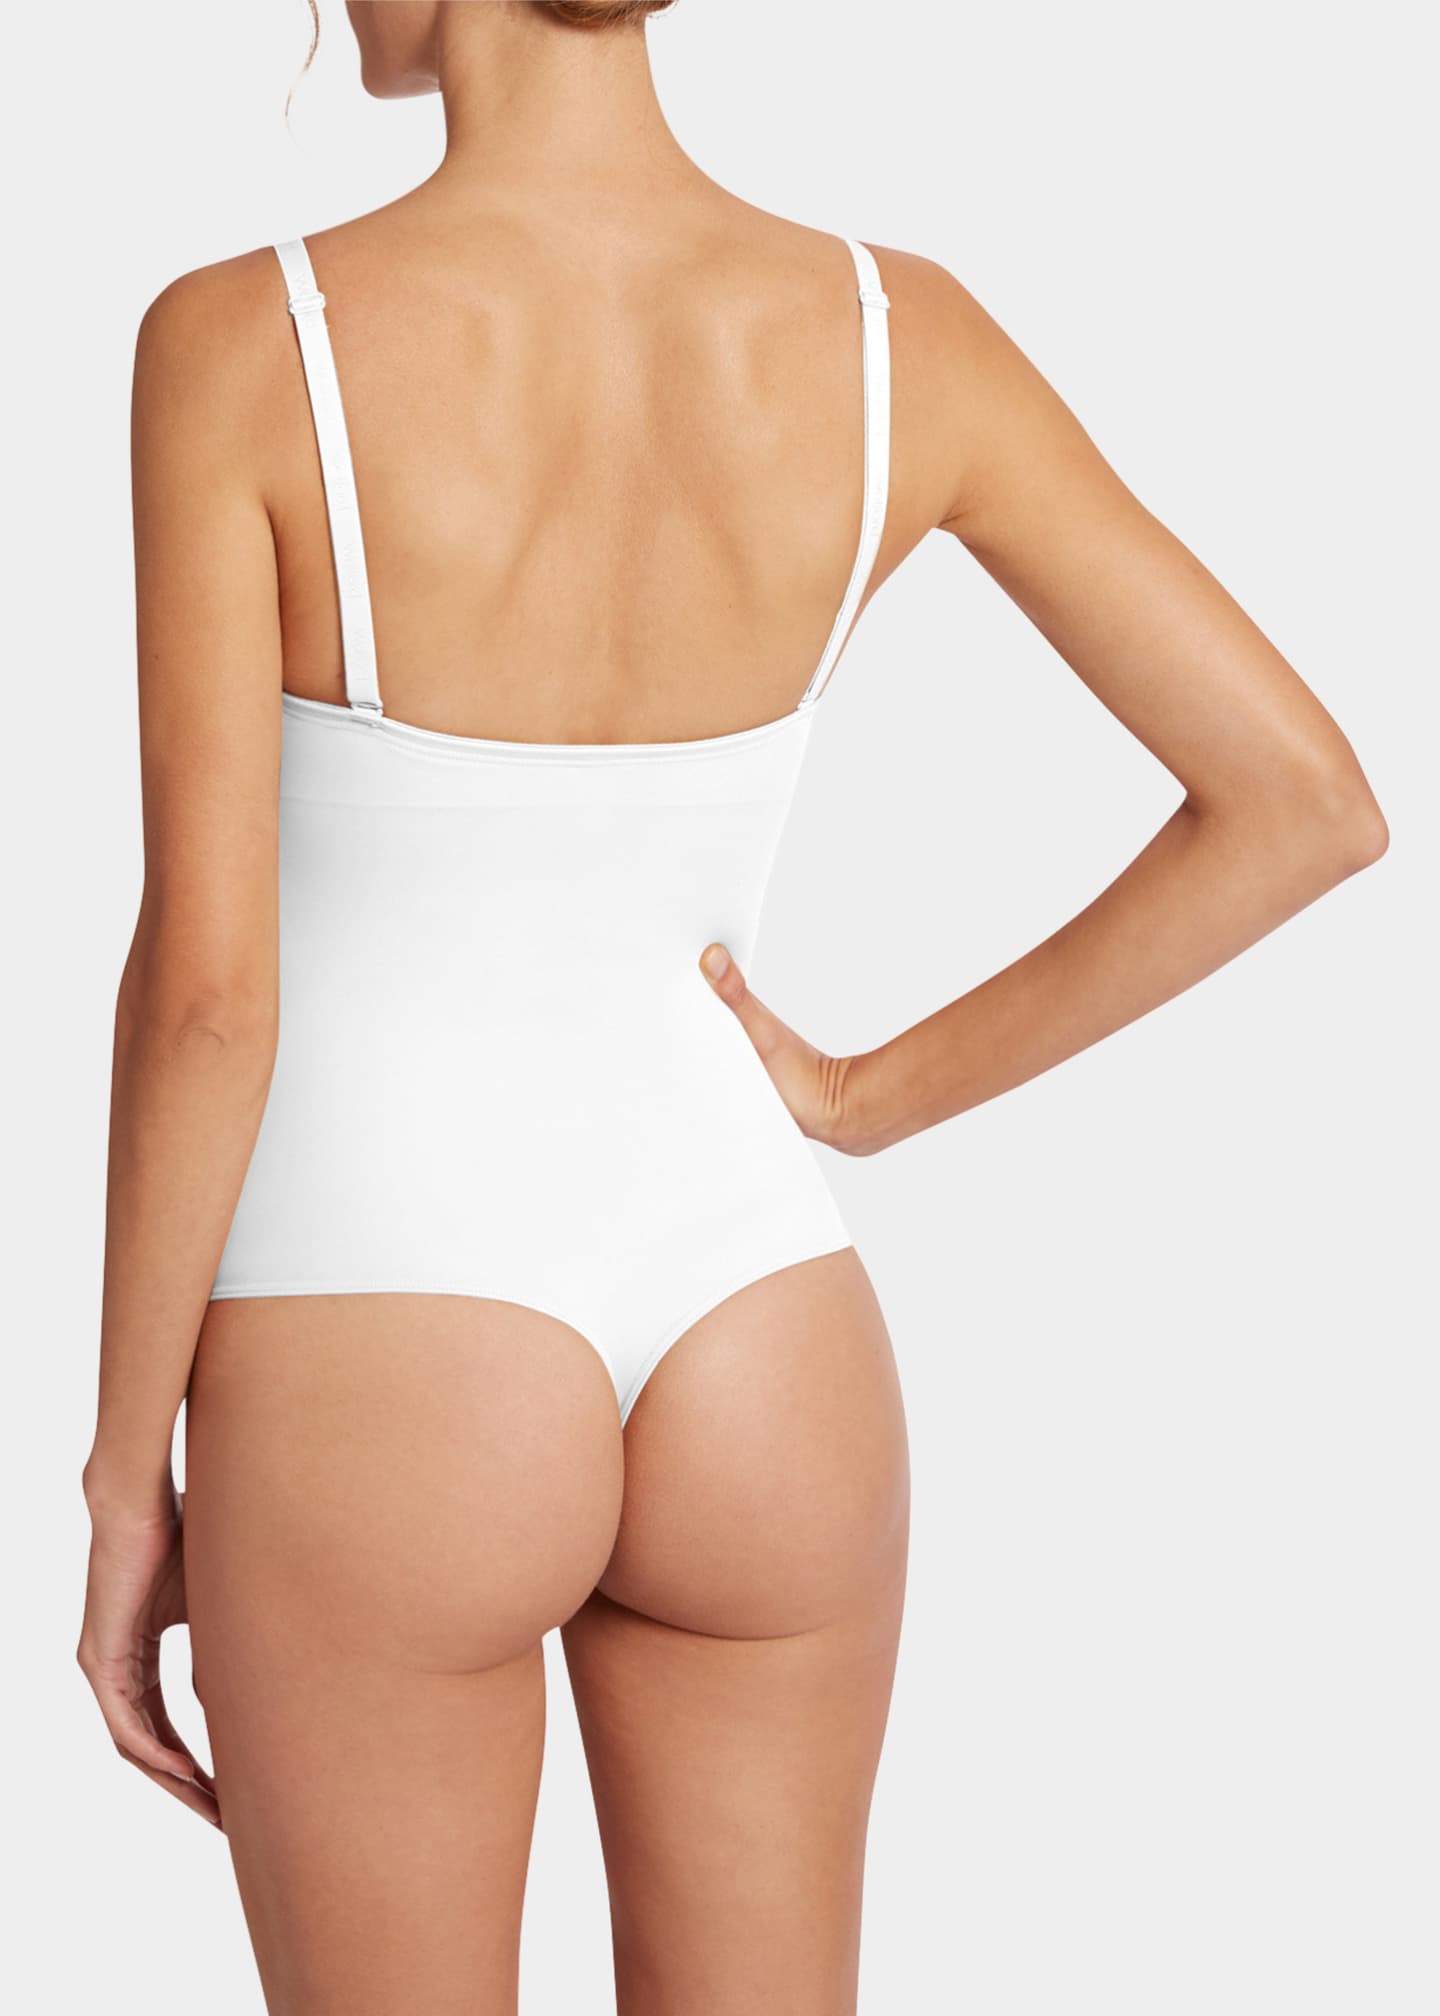 brixana via instagram⁣⁣ -⁣⁣ She's wearing @wolford Mat De Luxe Forming  Thong Body - Powder $250.00 ⁣ -⁣⁣ @junyawatanabe